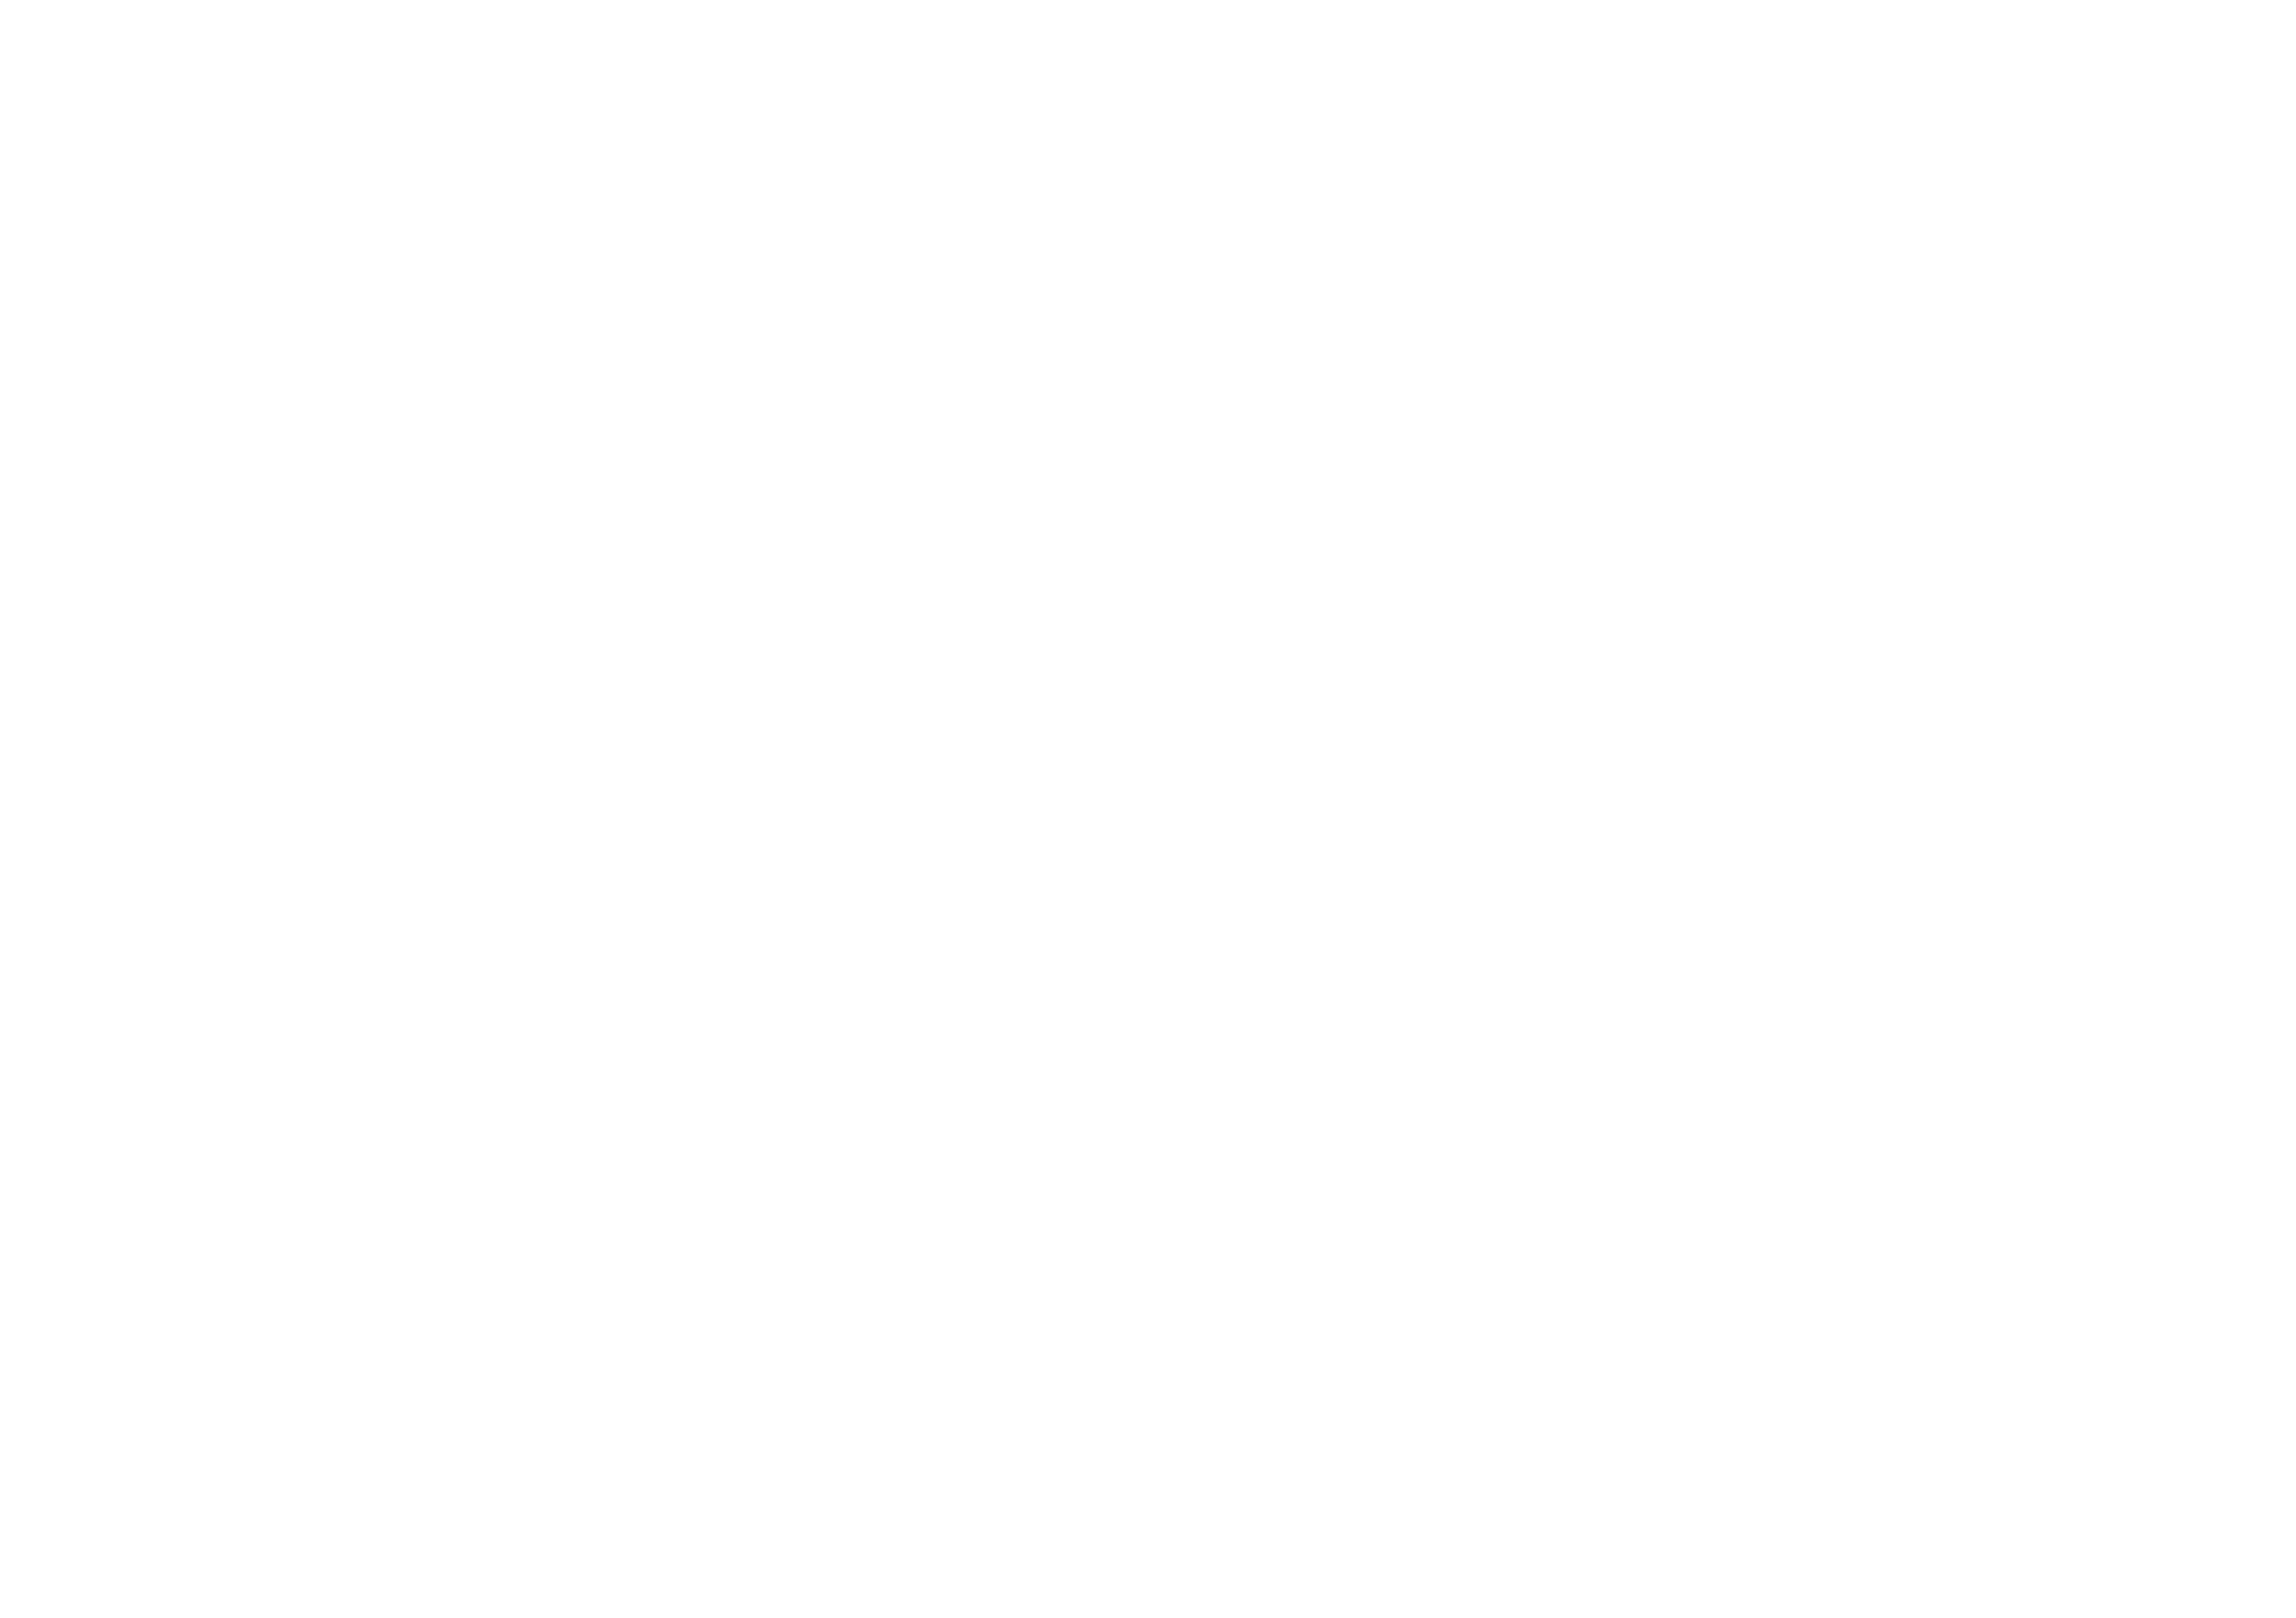 Tom Misch's - 5 Day Mischon